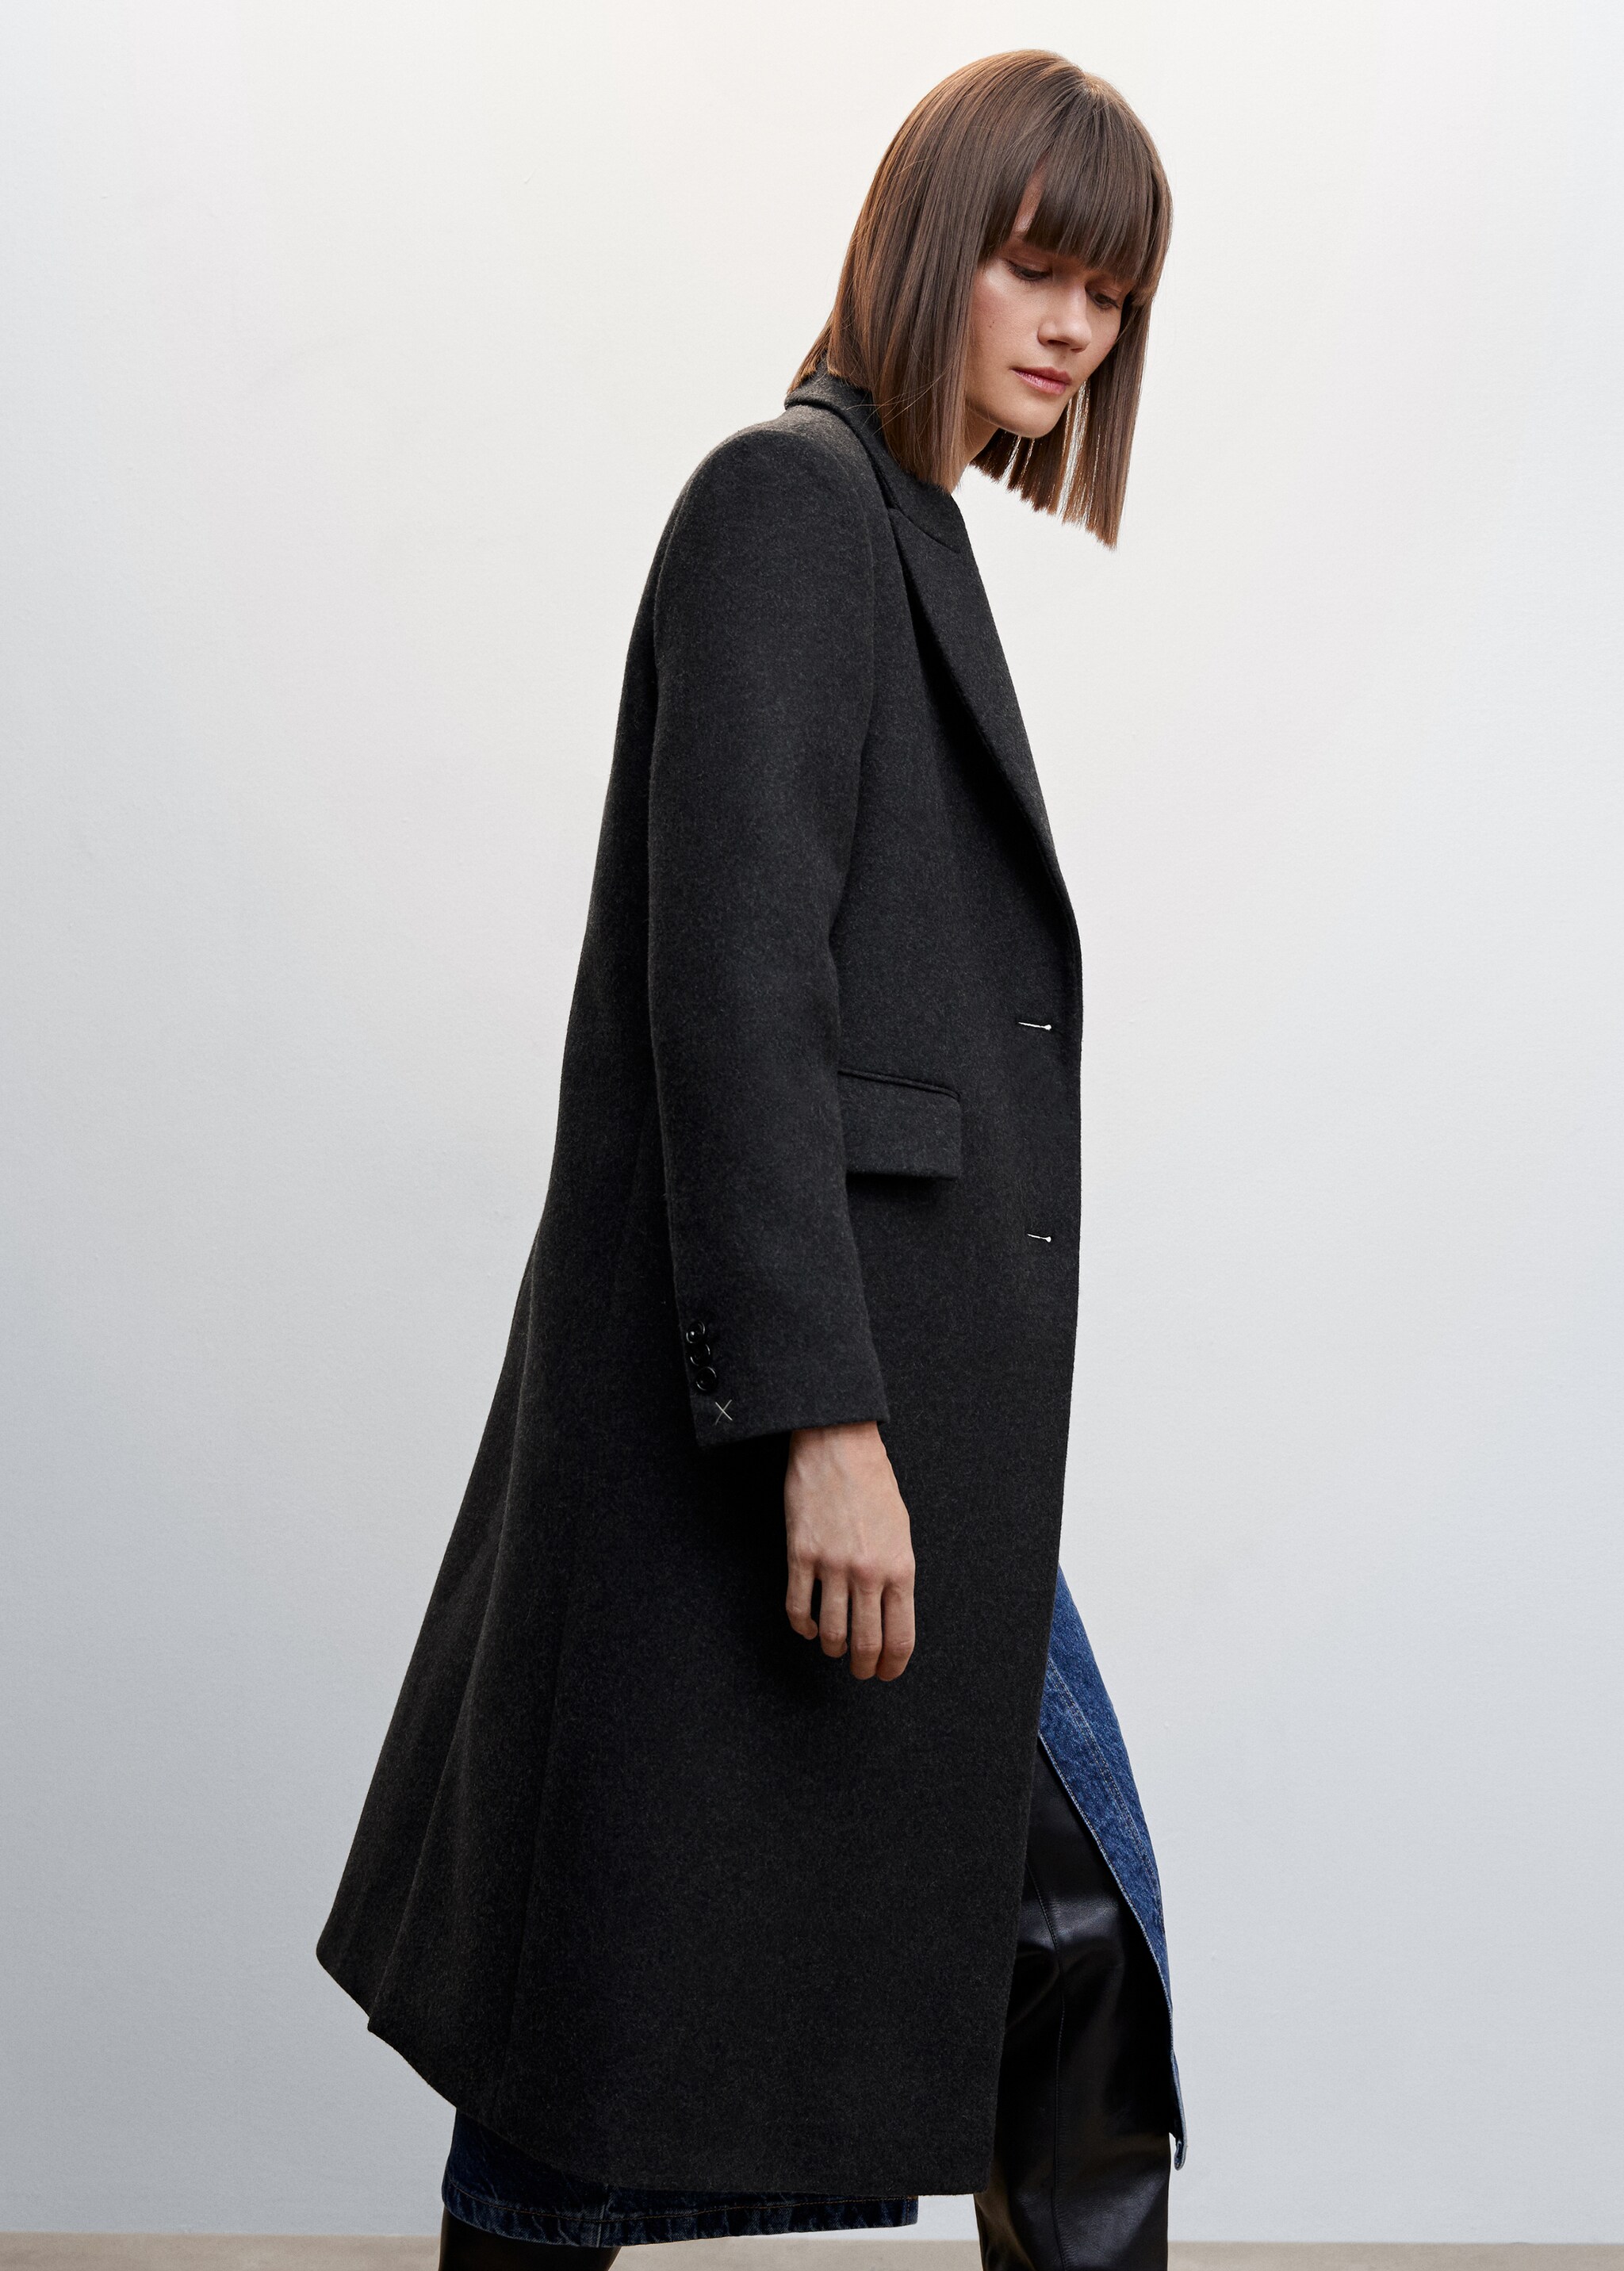 Tailored wool coat - Medium plane